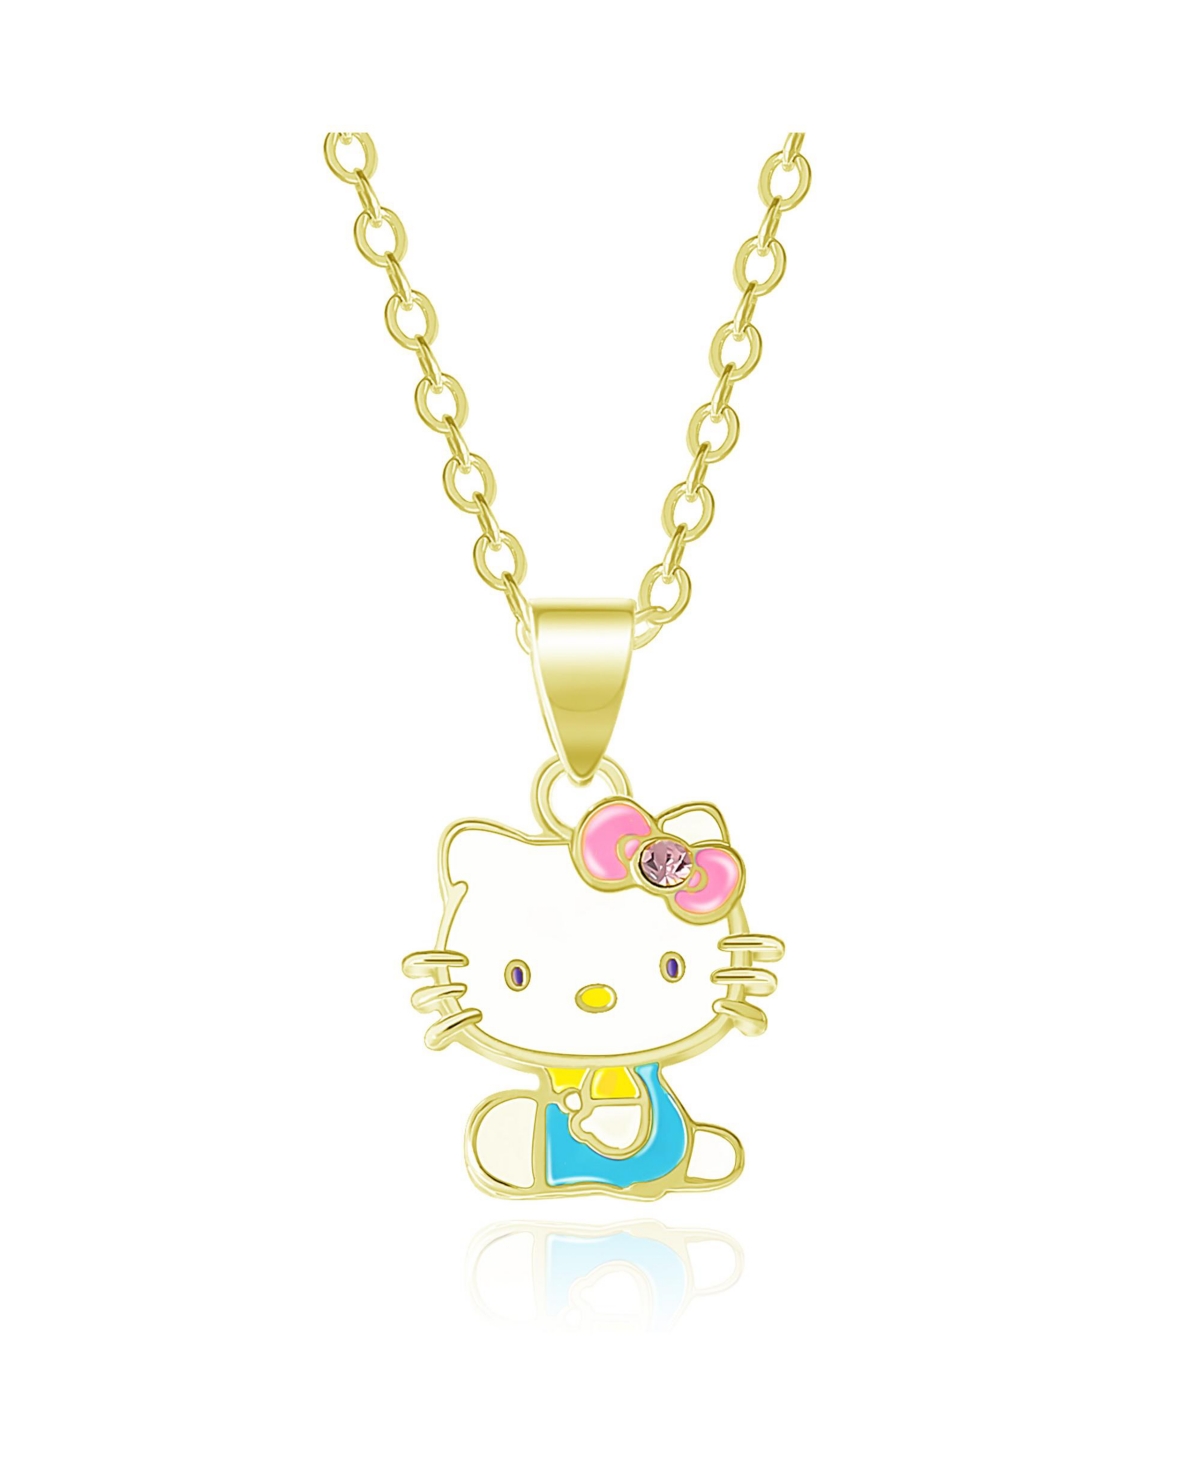 Sanrio Hello Kitty Enamel Seated Pendant - Gold tone, white, blue